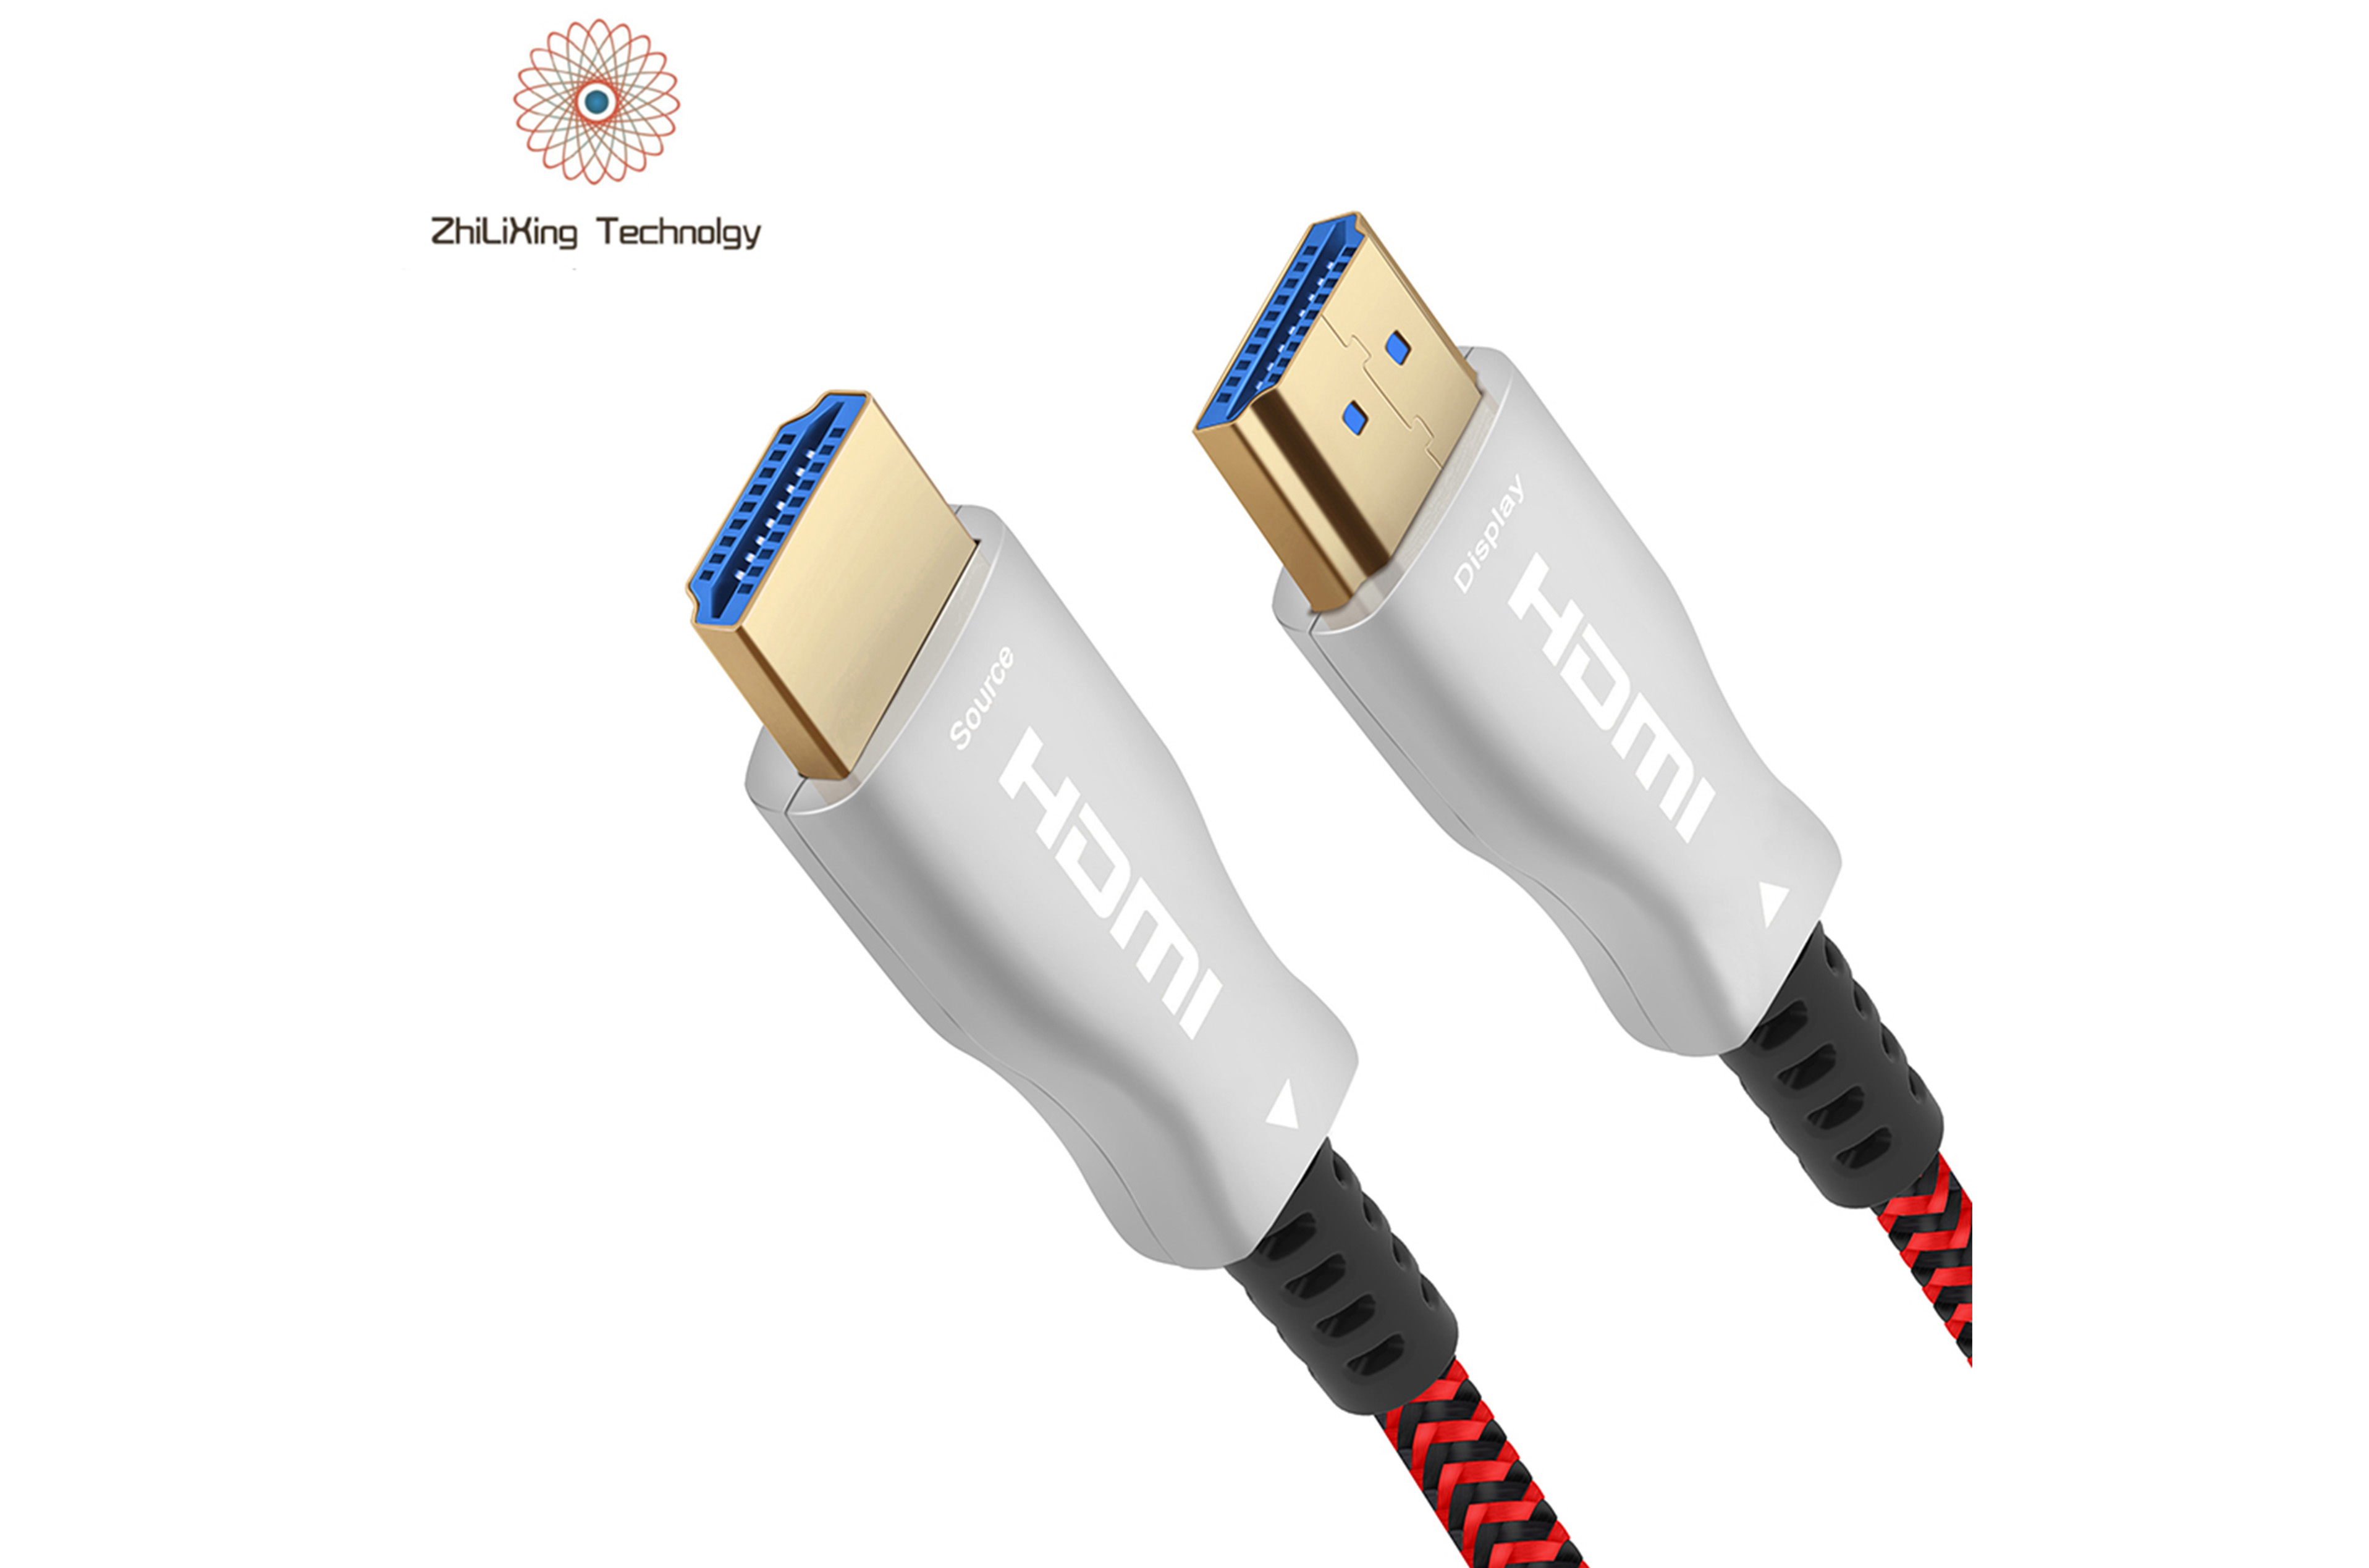 HDMI fiber optic cable-19012